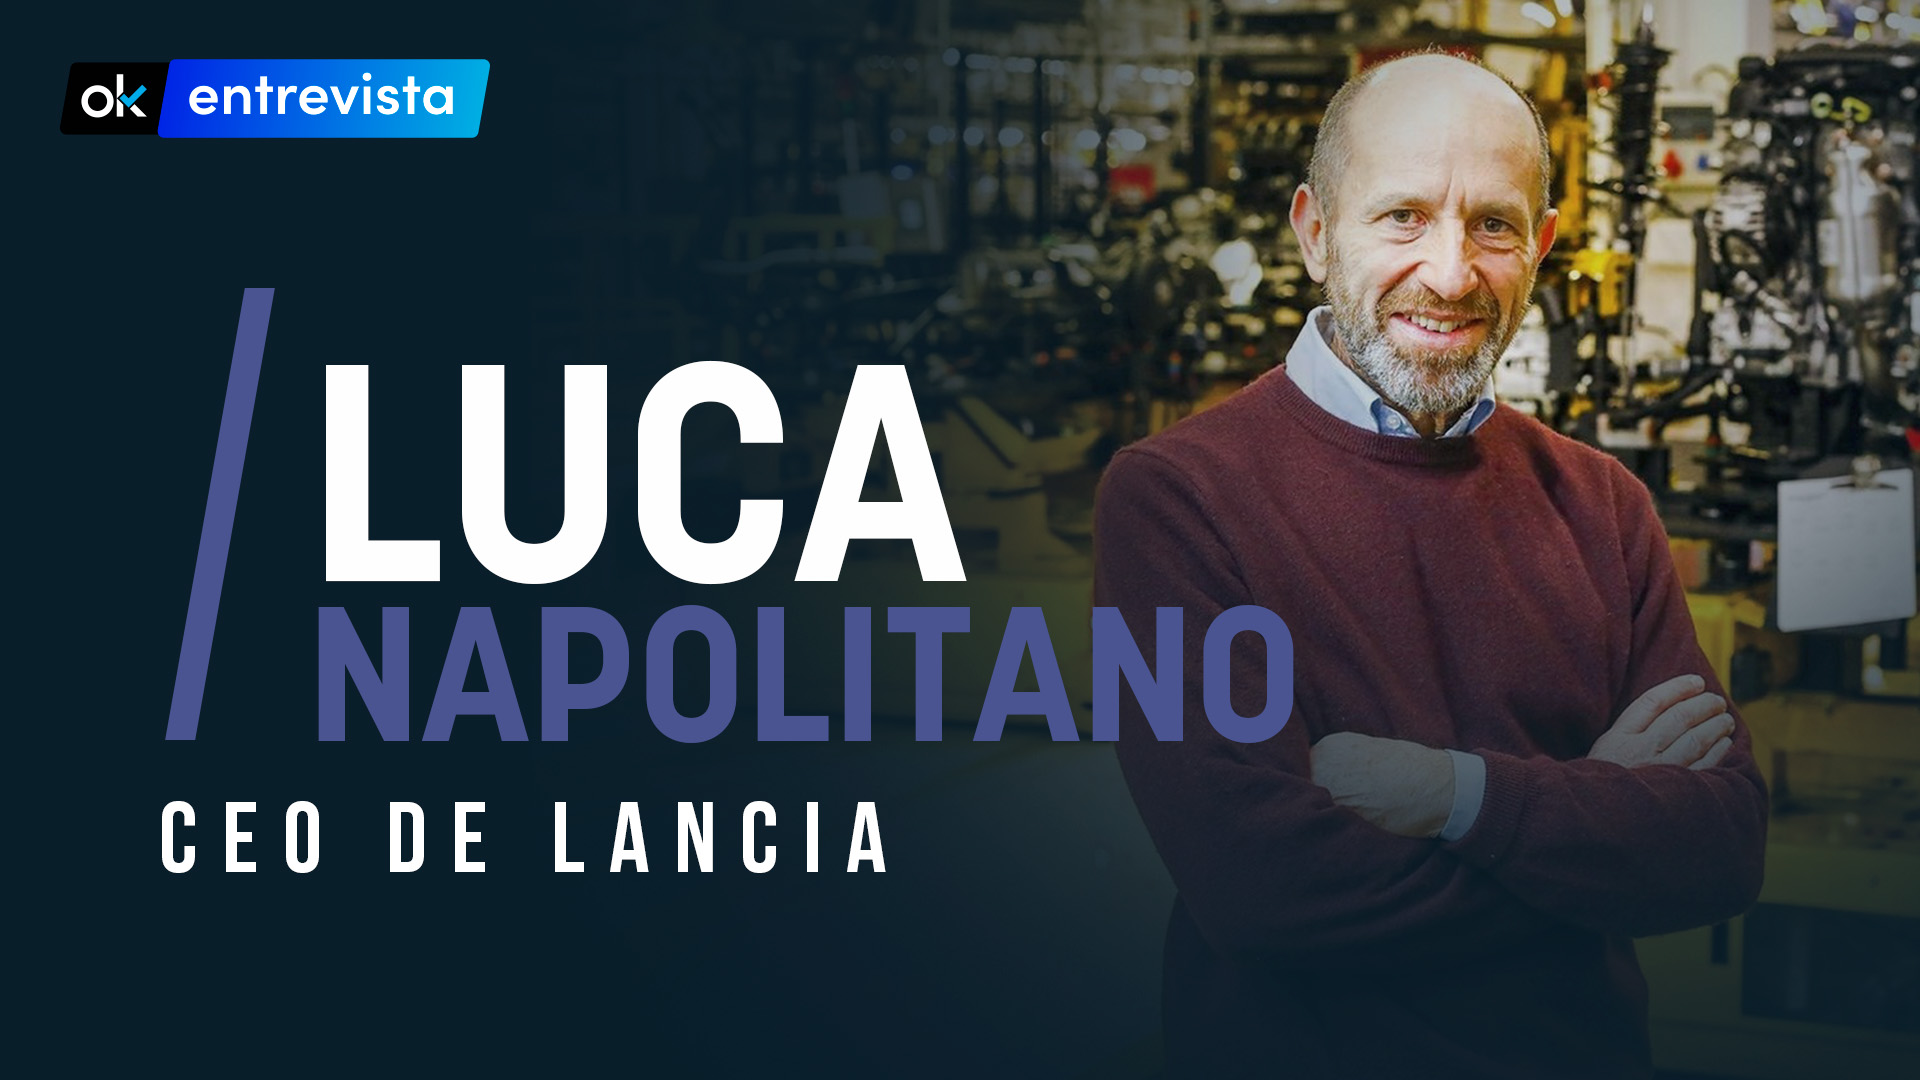 Luca Napolitano, CEO de Lancia.